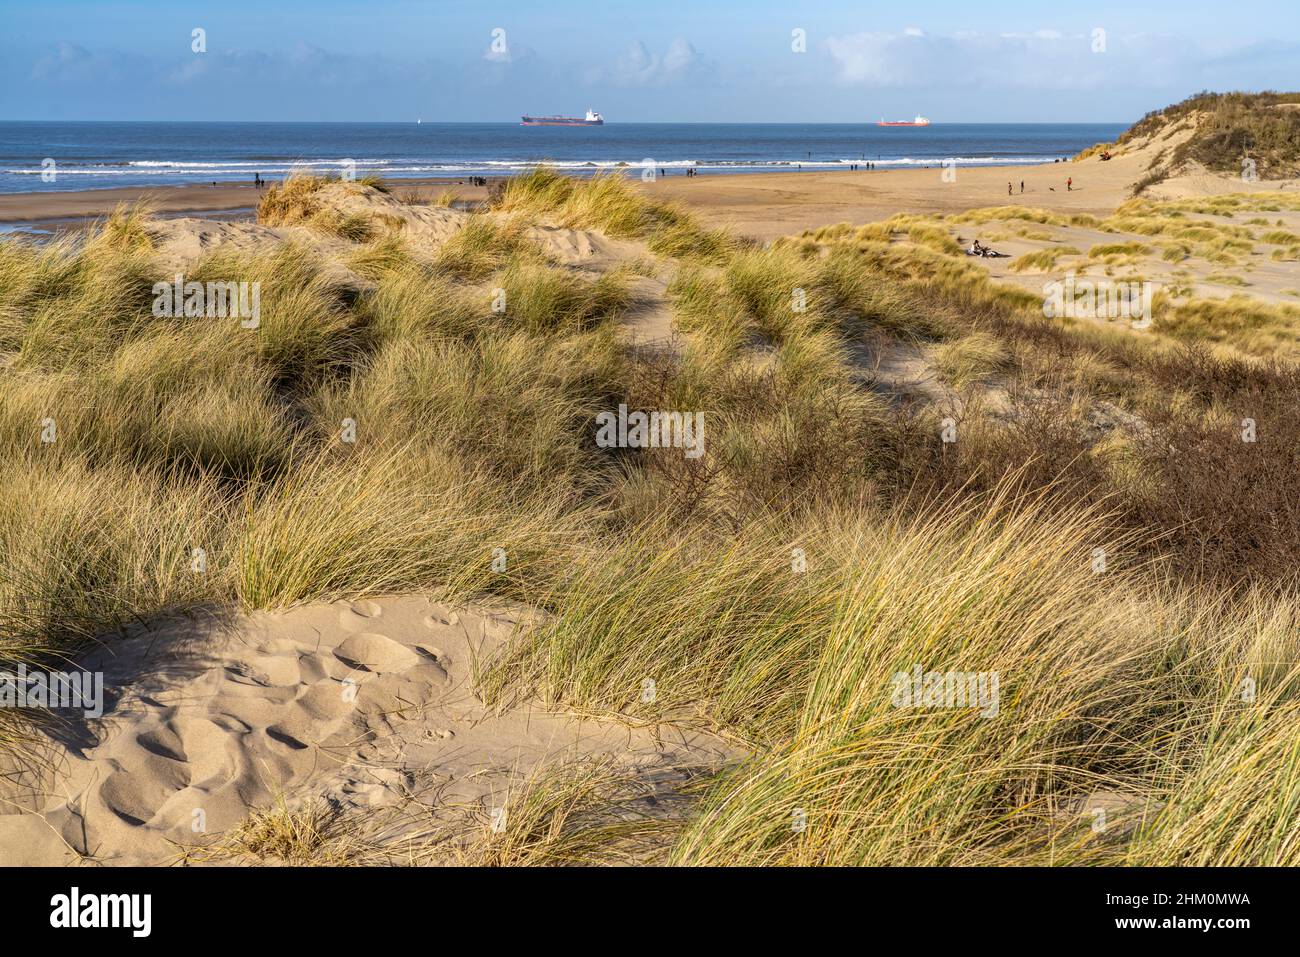 Strand des  Naturschutzgebiet Het Zwin an der Nordsee zwischen Belgien und den  Niederlanden  |   Beach of  the nature reserve Zwin at the North Sea c Stock Photo